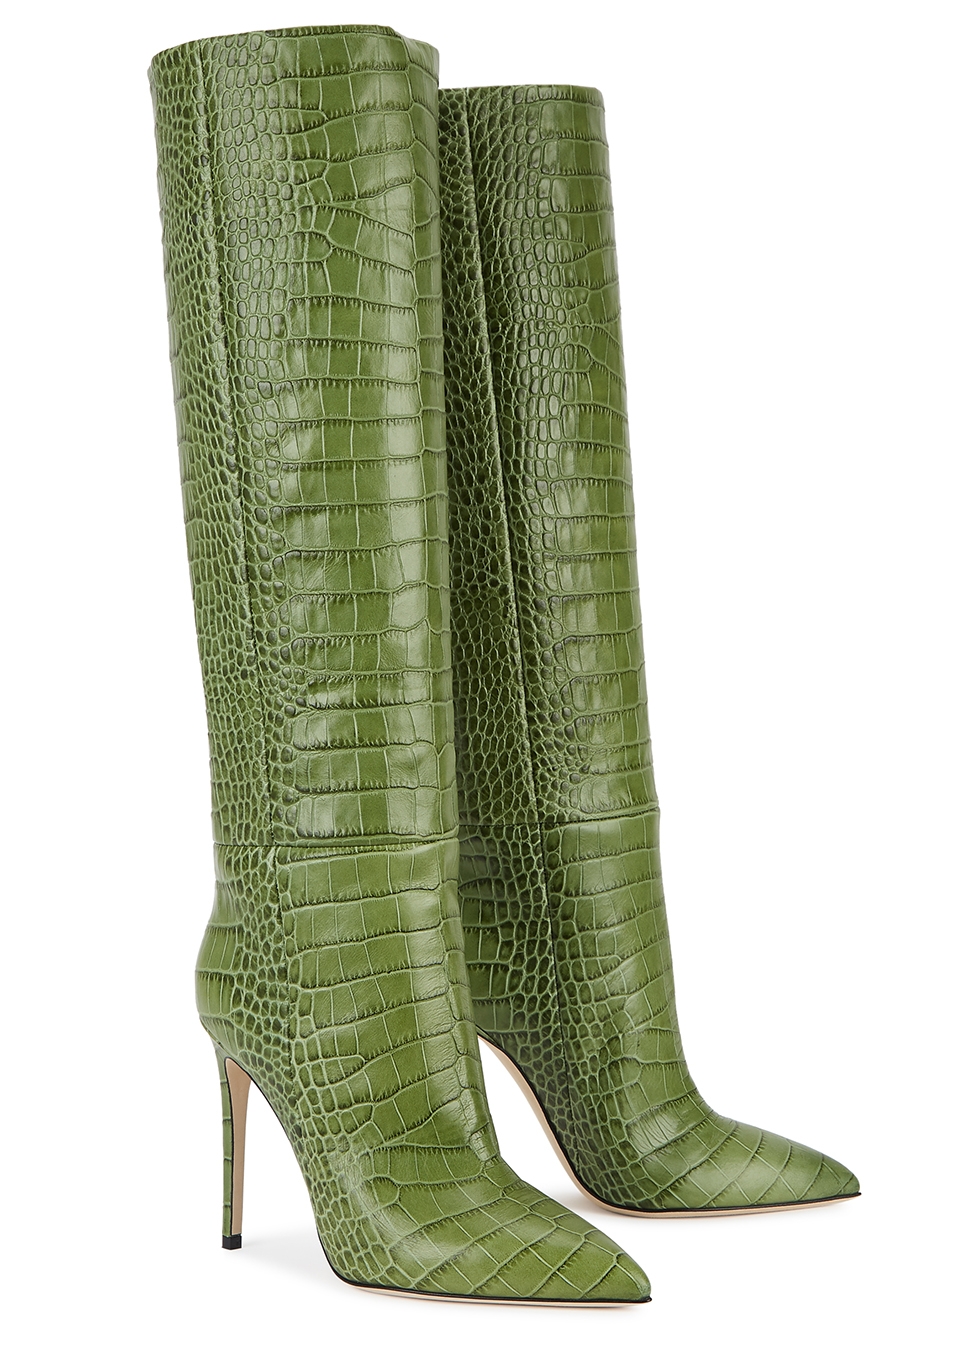 green knee high boots